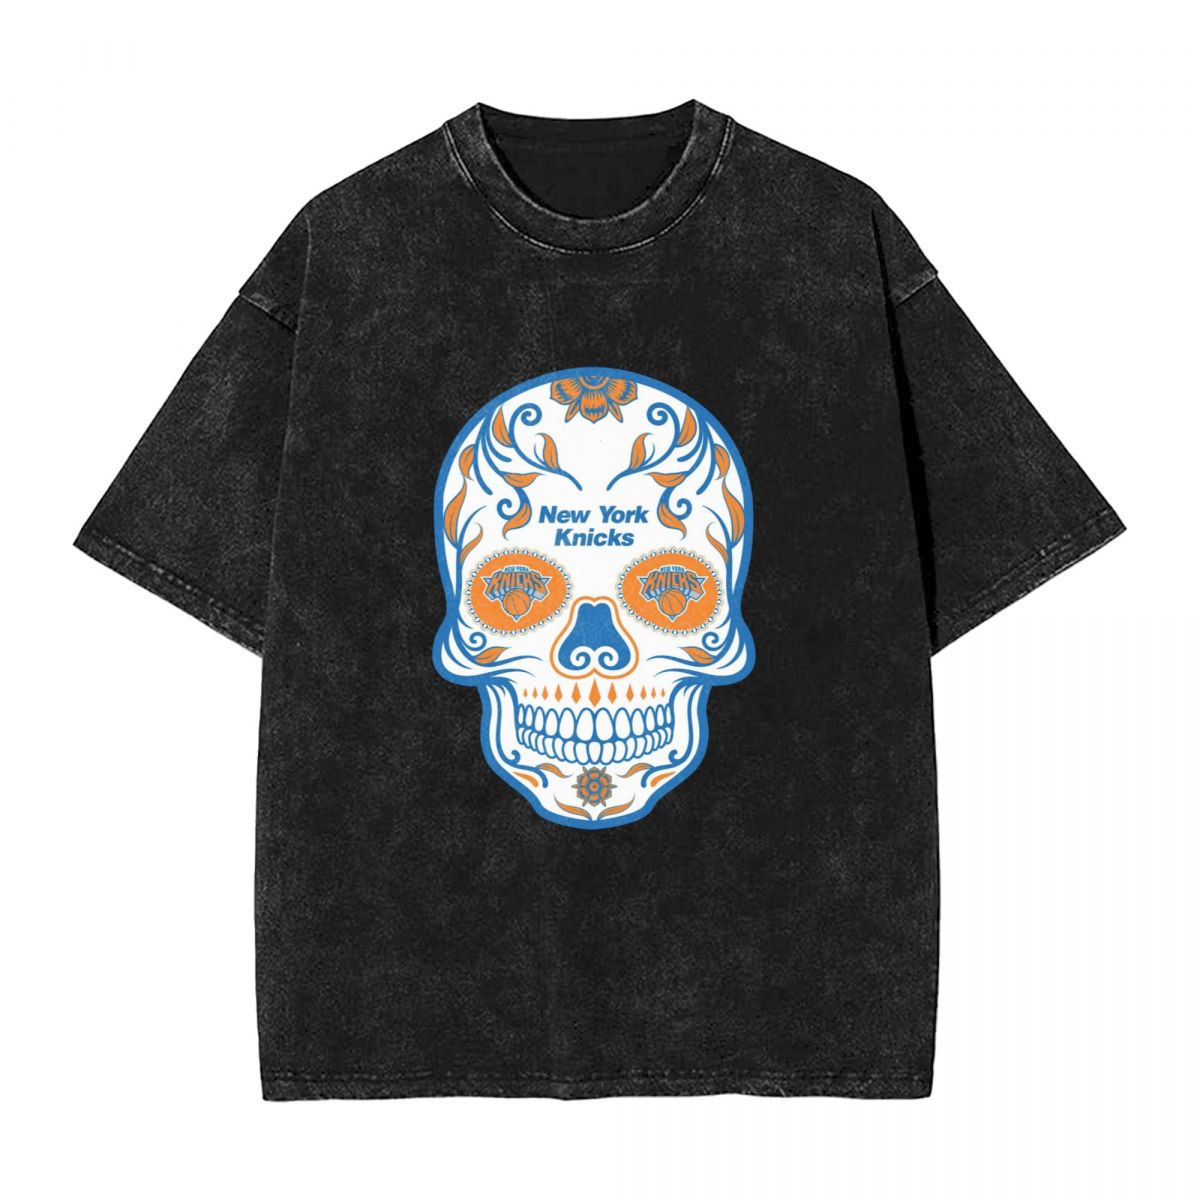 New York Knicks Skull Printed Vintage Men's Oversized T-Shirt